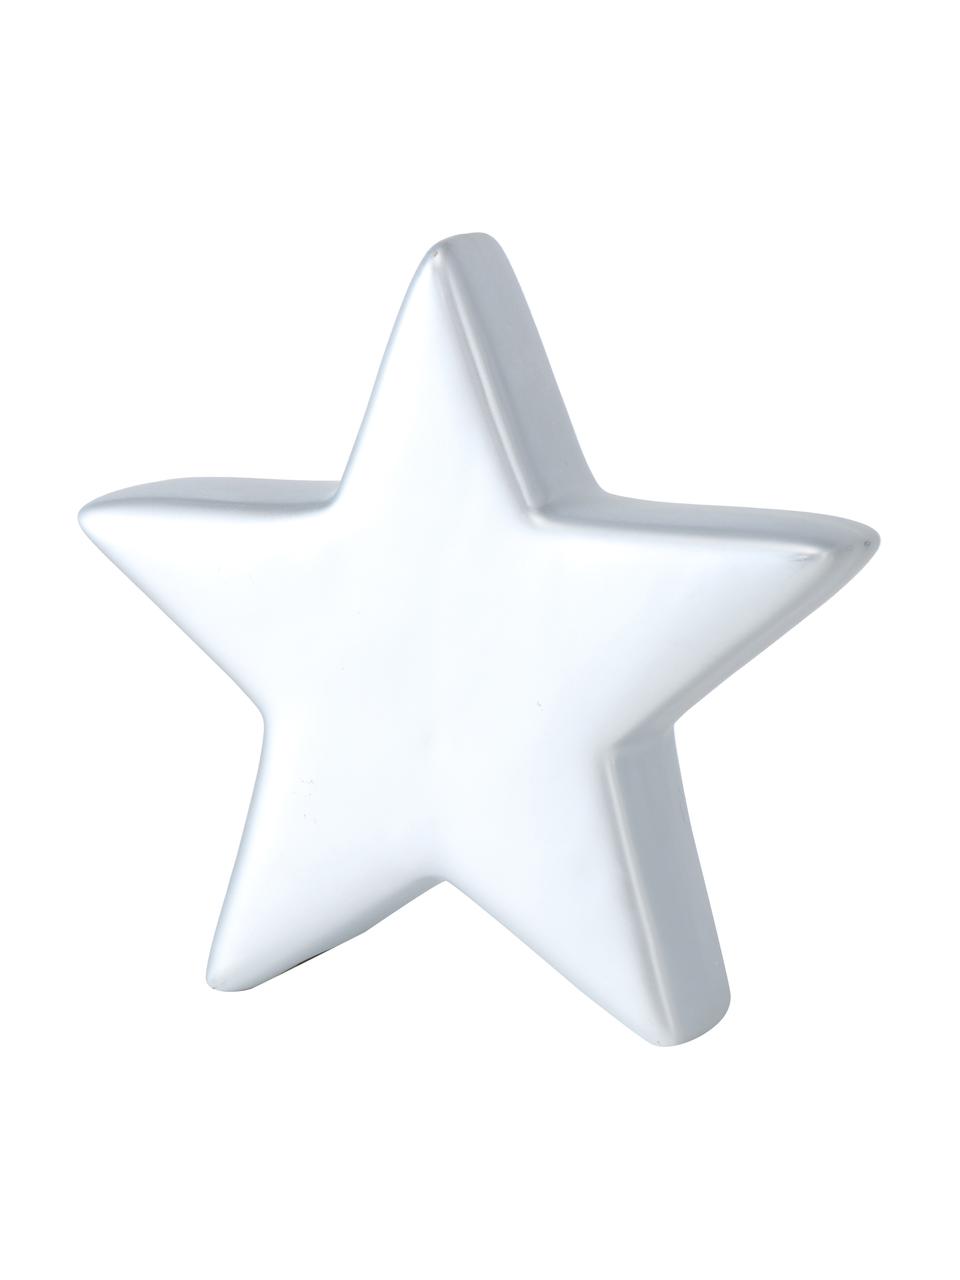 Dekorativní hvězdy Glimmy, v 14 cm, 2 ks, Keramika, Stříbrná, bílá, Š 14 cm, V 14 cm, H 3 cm